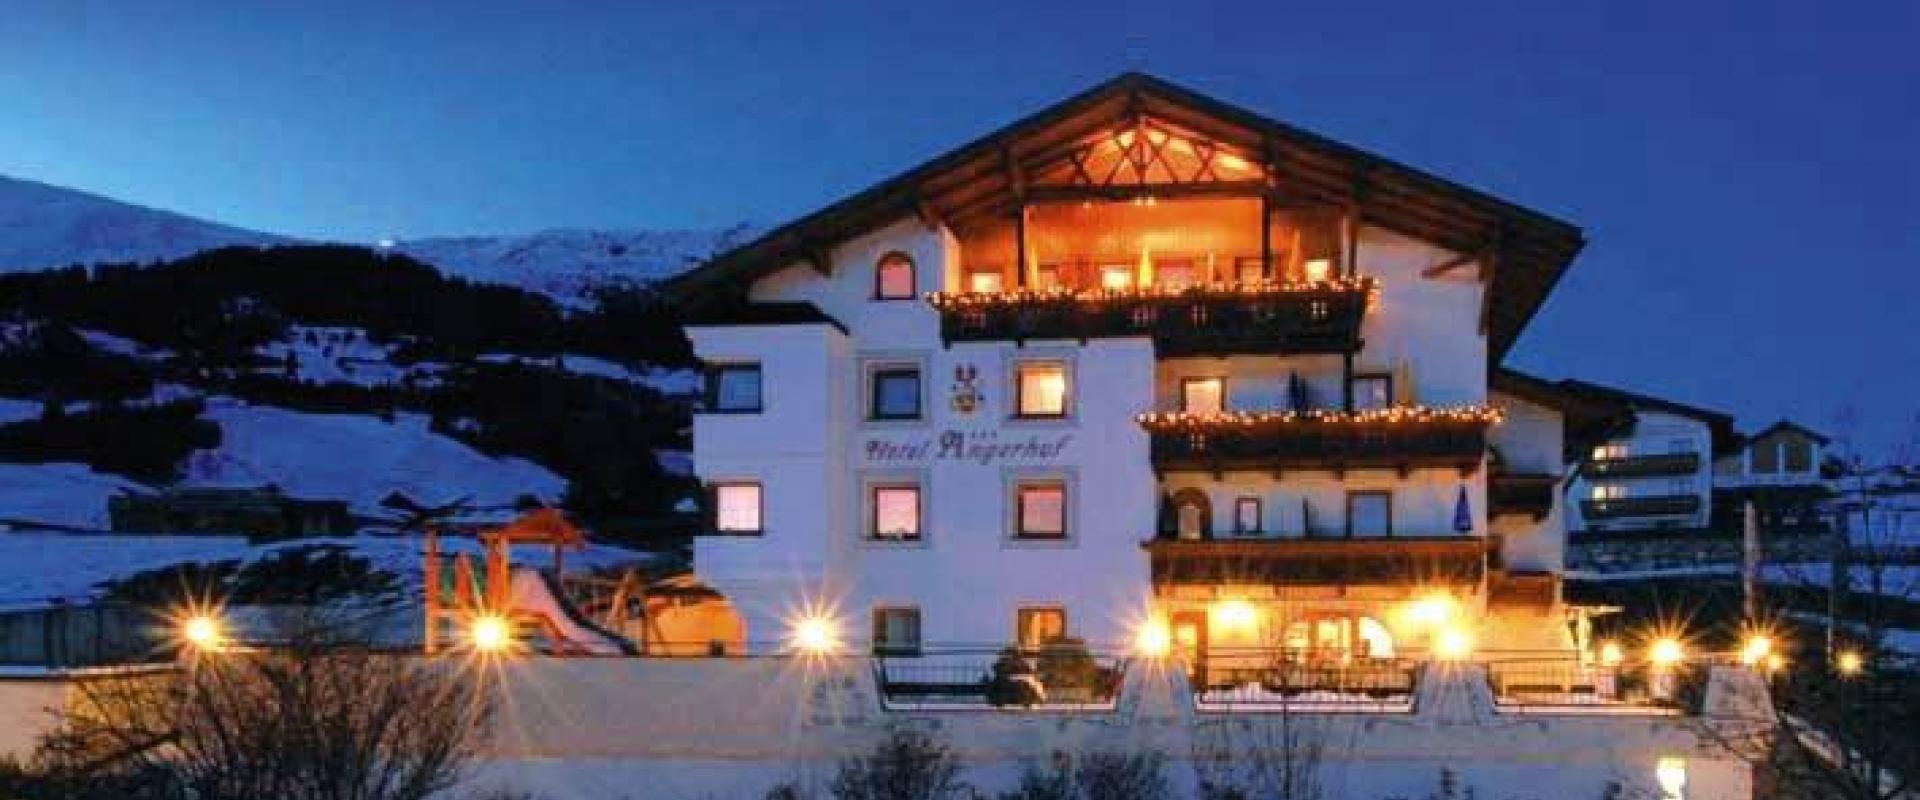 14020 Motorrad Hotel Angerhof in Tirol.jpg